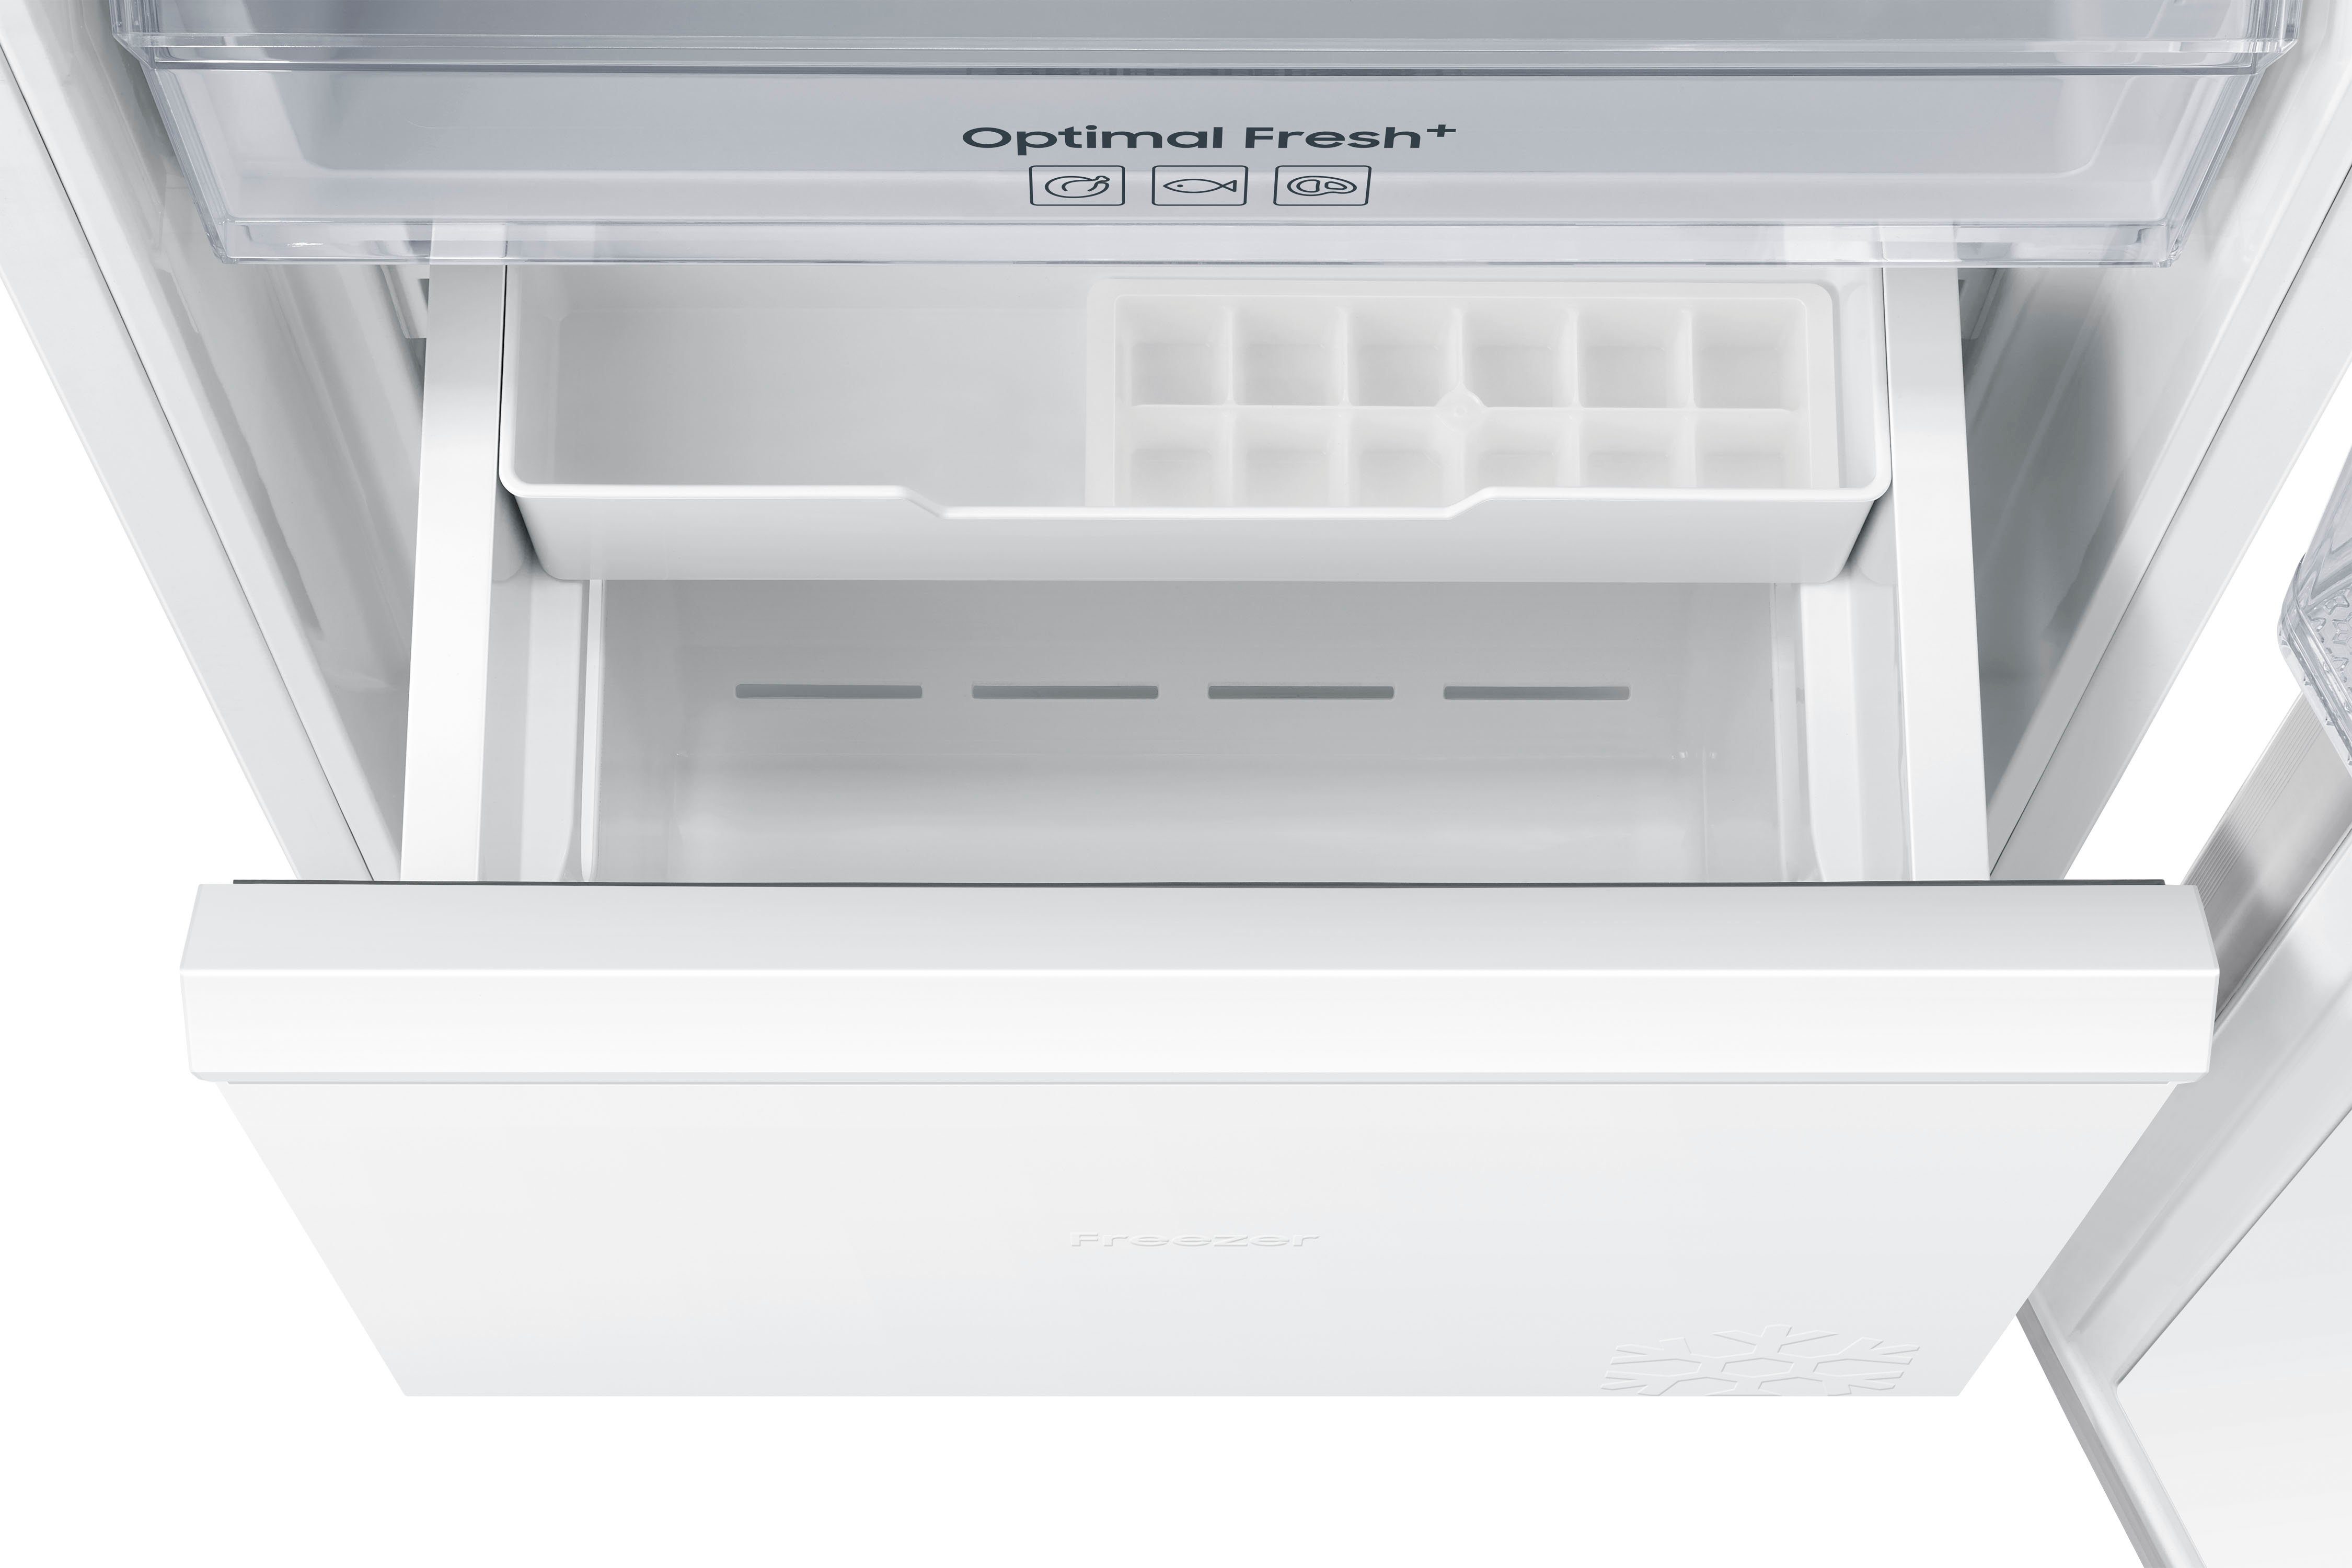 cm Einbaukühlschrank Samsung cm hoch, 54 111,5 breit BRD27610EWW,